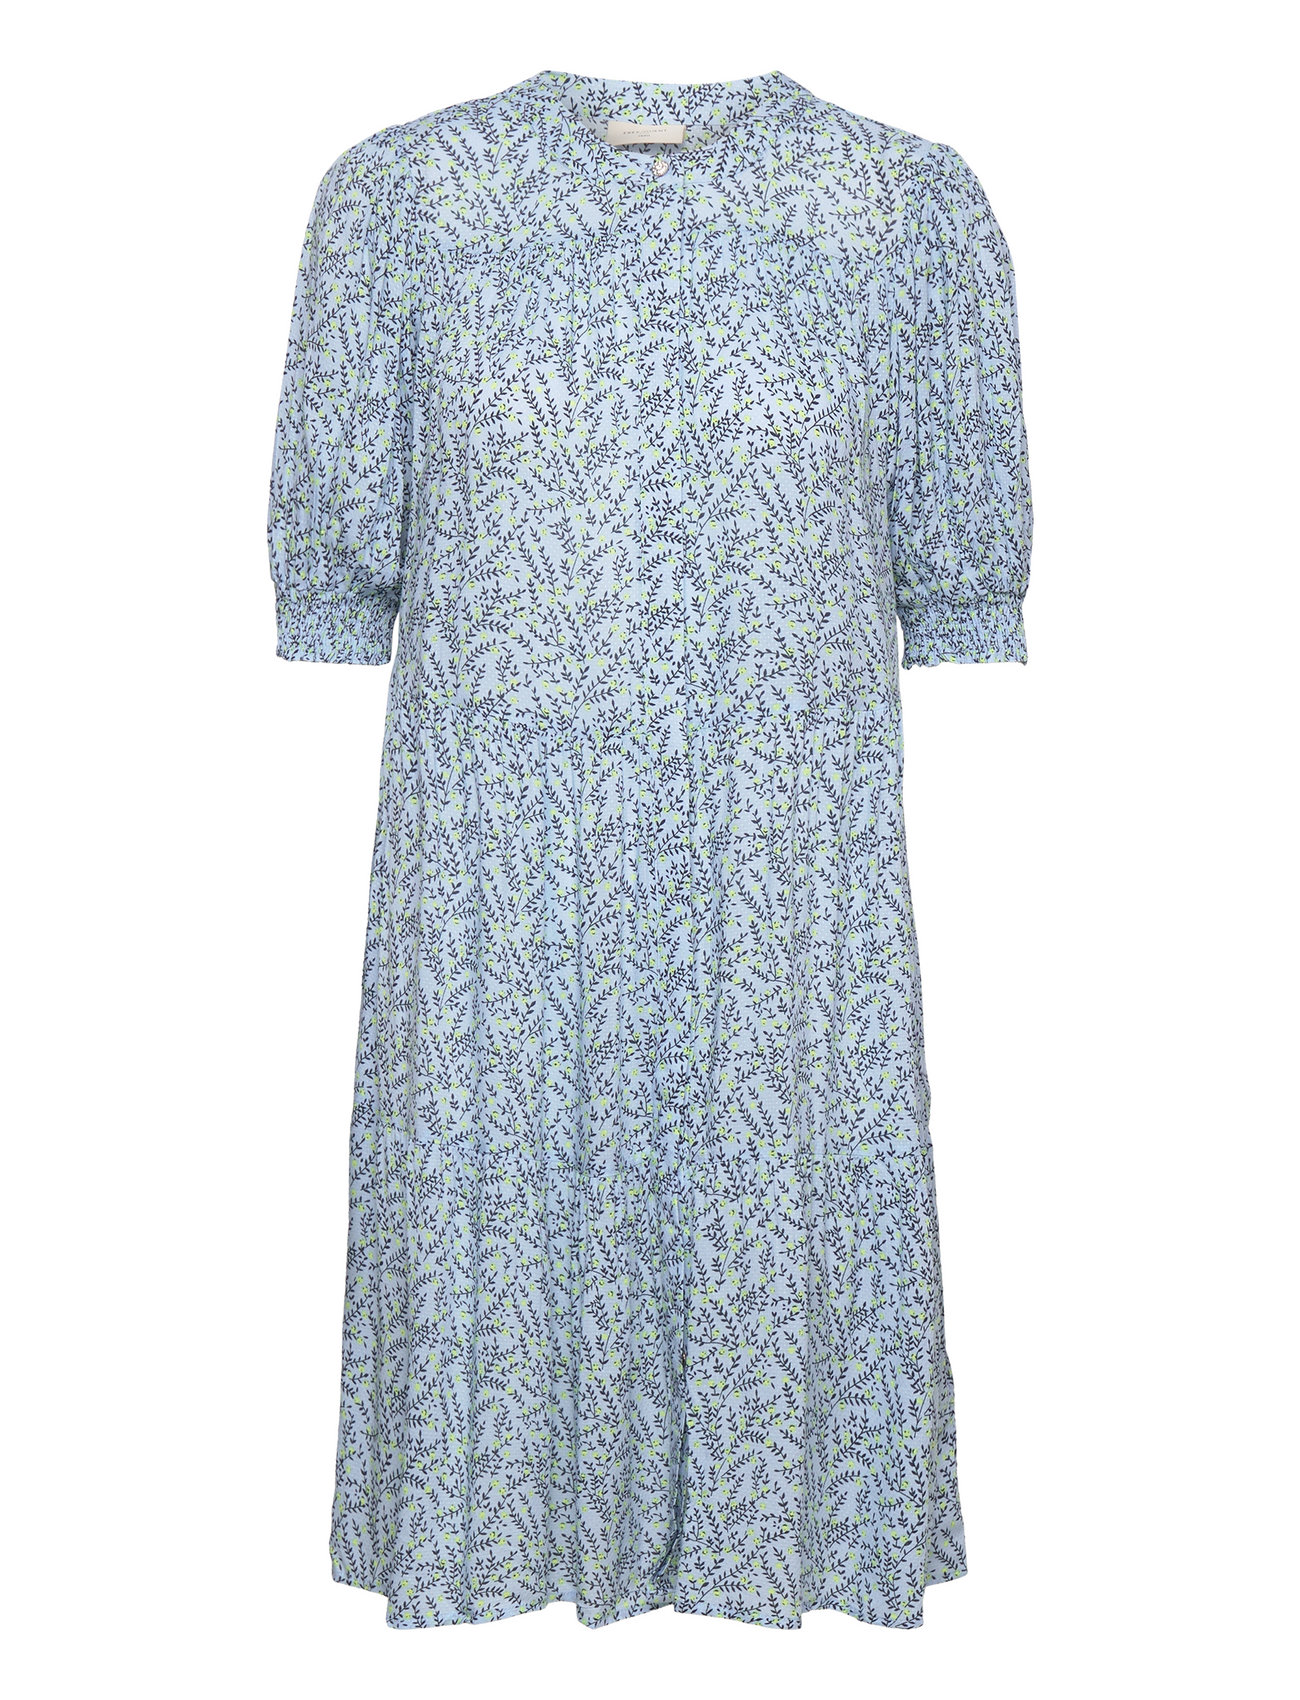 FREE/QUENT Fqadney-dress (Chambray Blue W. Sharp Green/Blå) - 399 kr ...